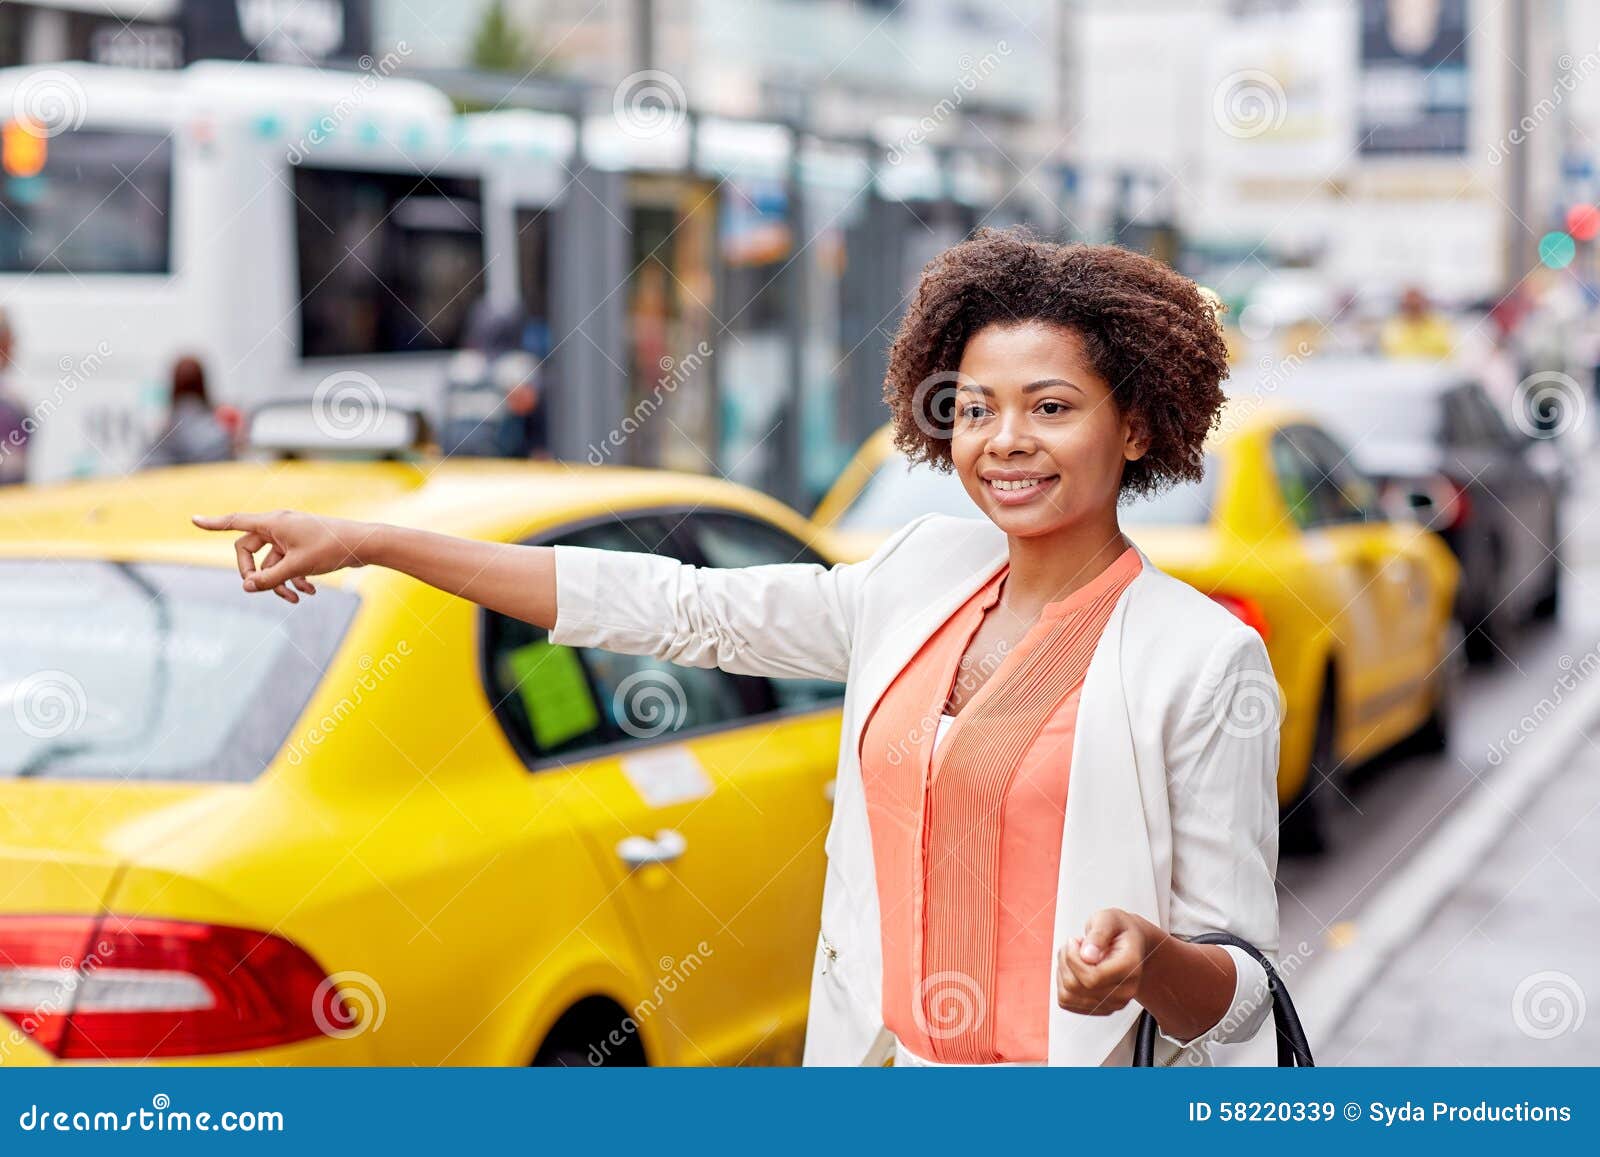 Негритянка такси. Девушка ловит такси. Красивая девушка ловит такси. Catching Taxi. Жест поймать такси.